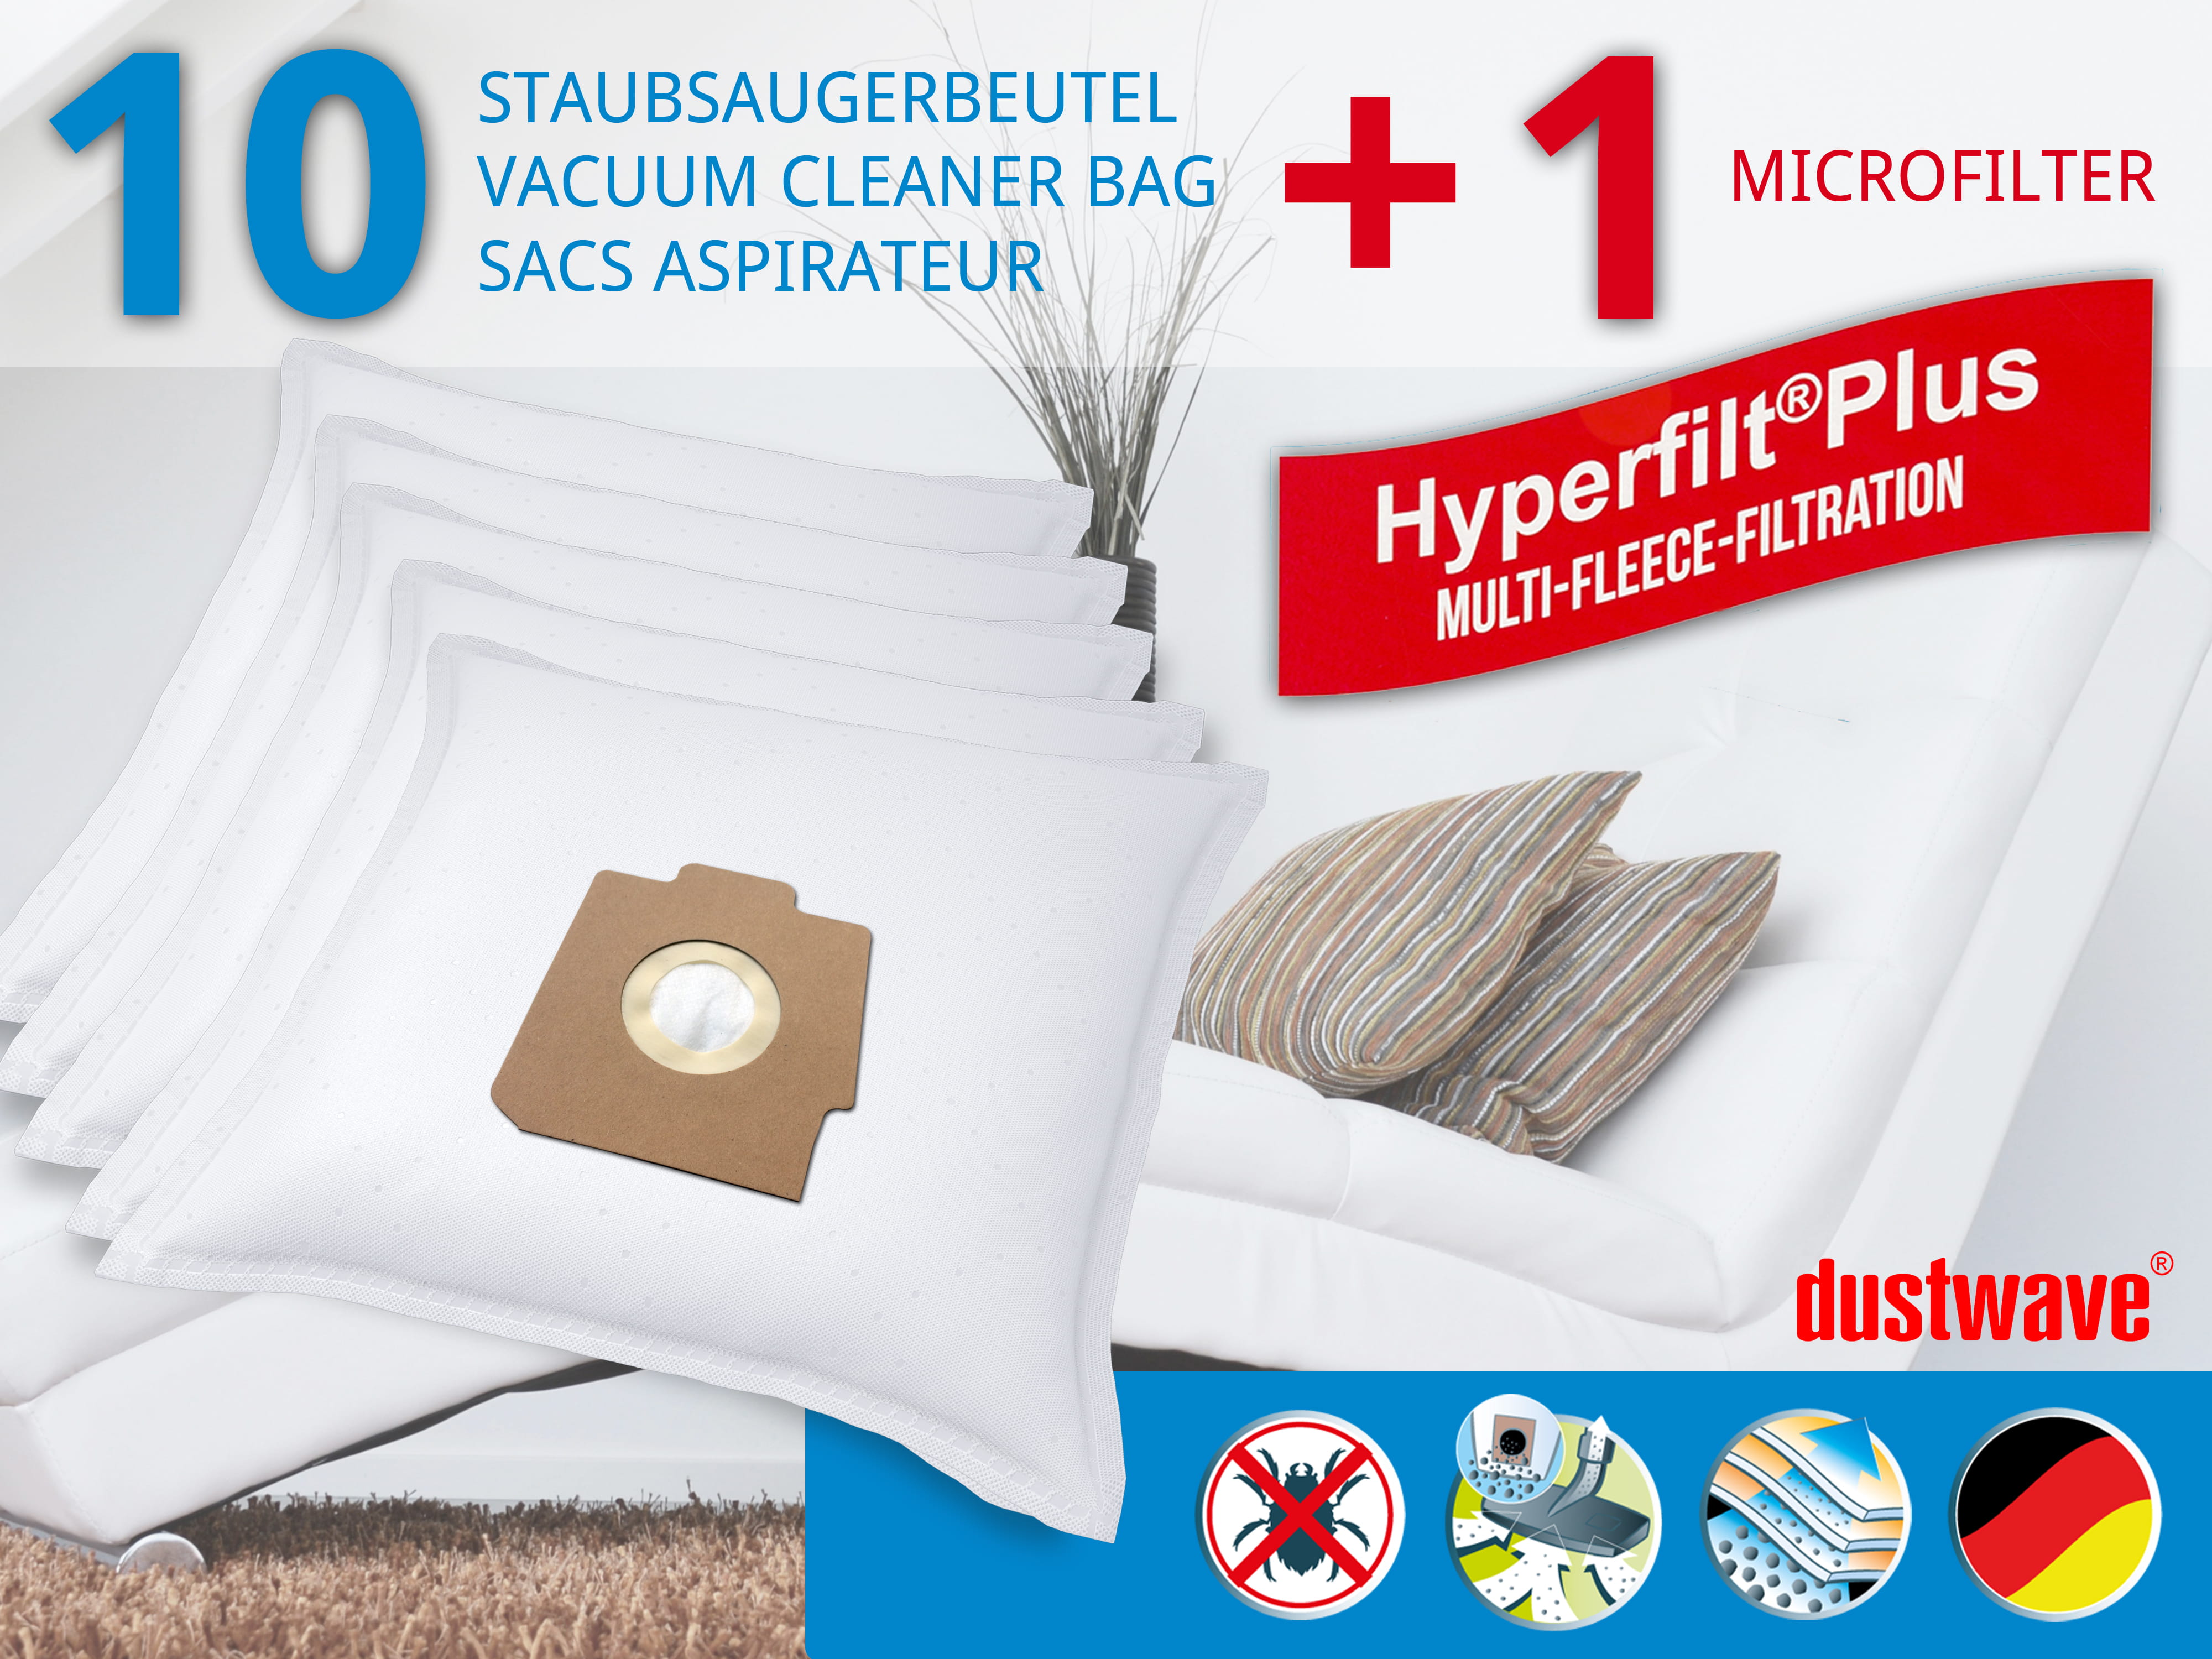 Dustwave® 10 Staubsaugerbeutel für Hoover SAR1207 001 - hocheffizient, mehrlagiges Mikrovlies mit Hygieneverschluss - Made in Germany